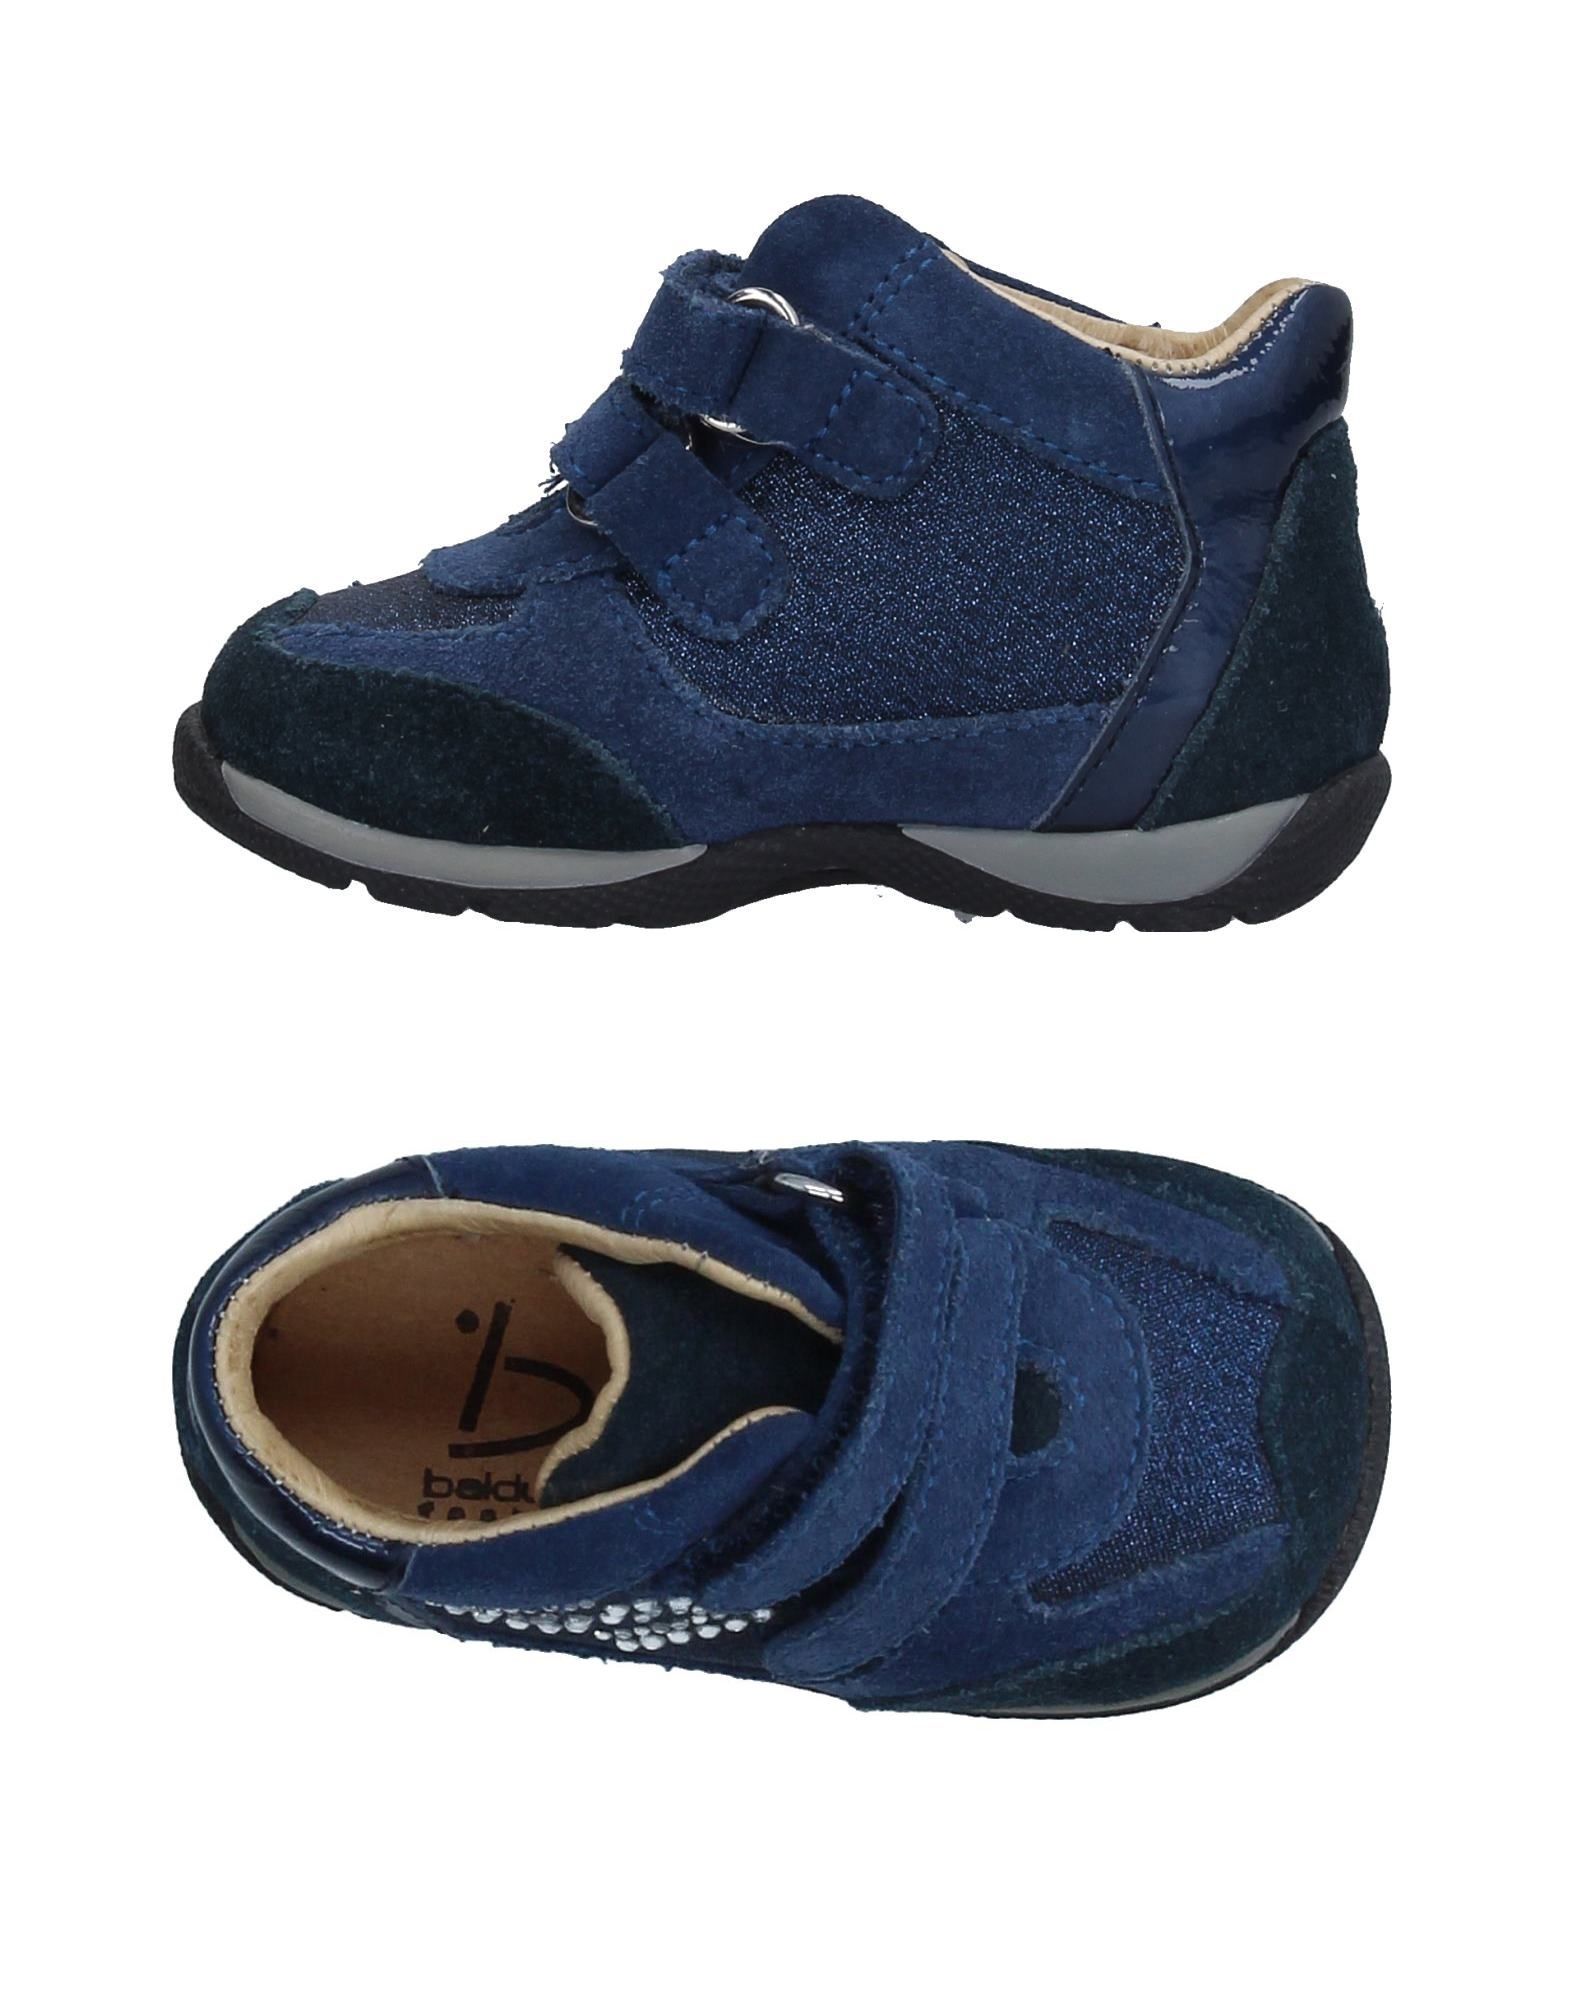 suede blue shoes